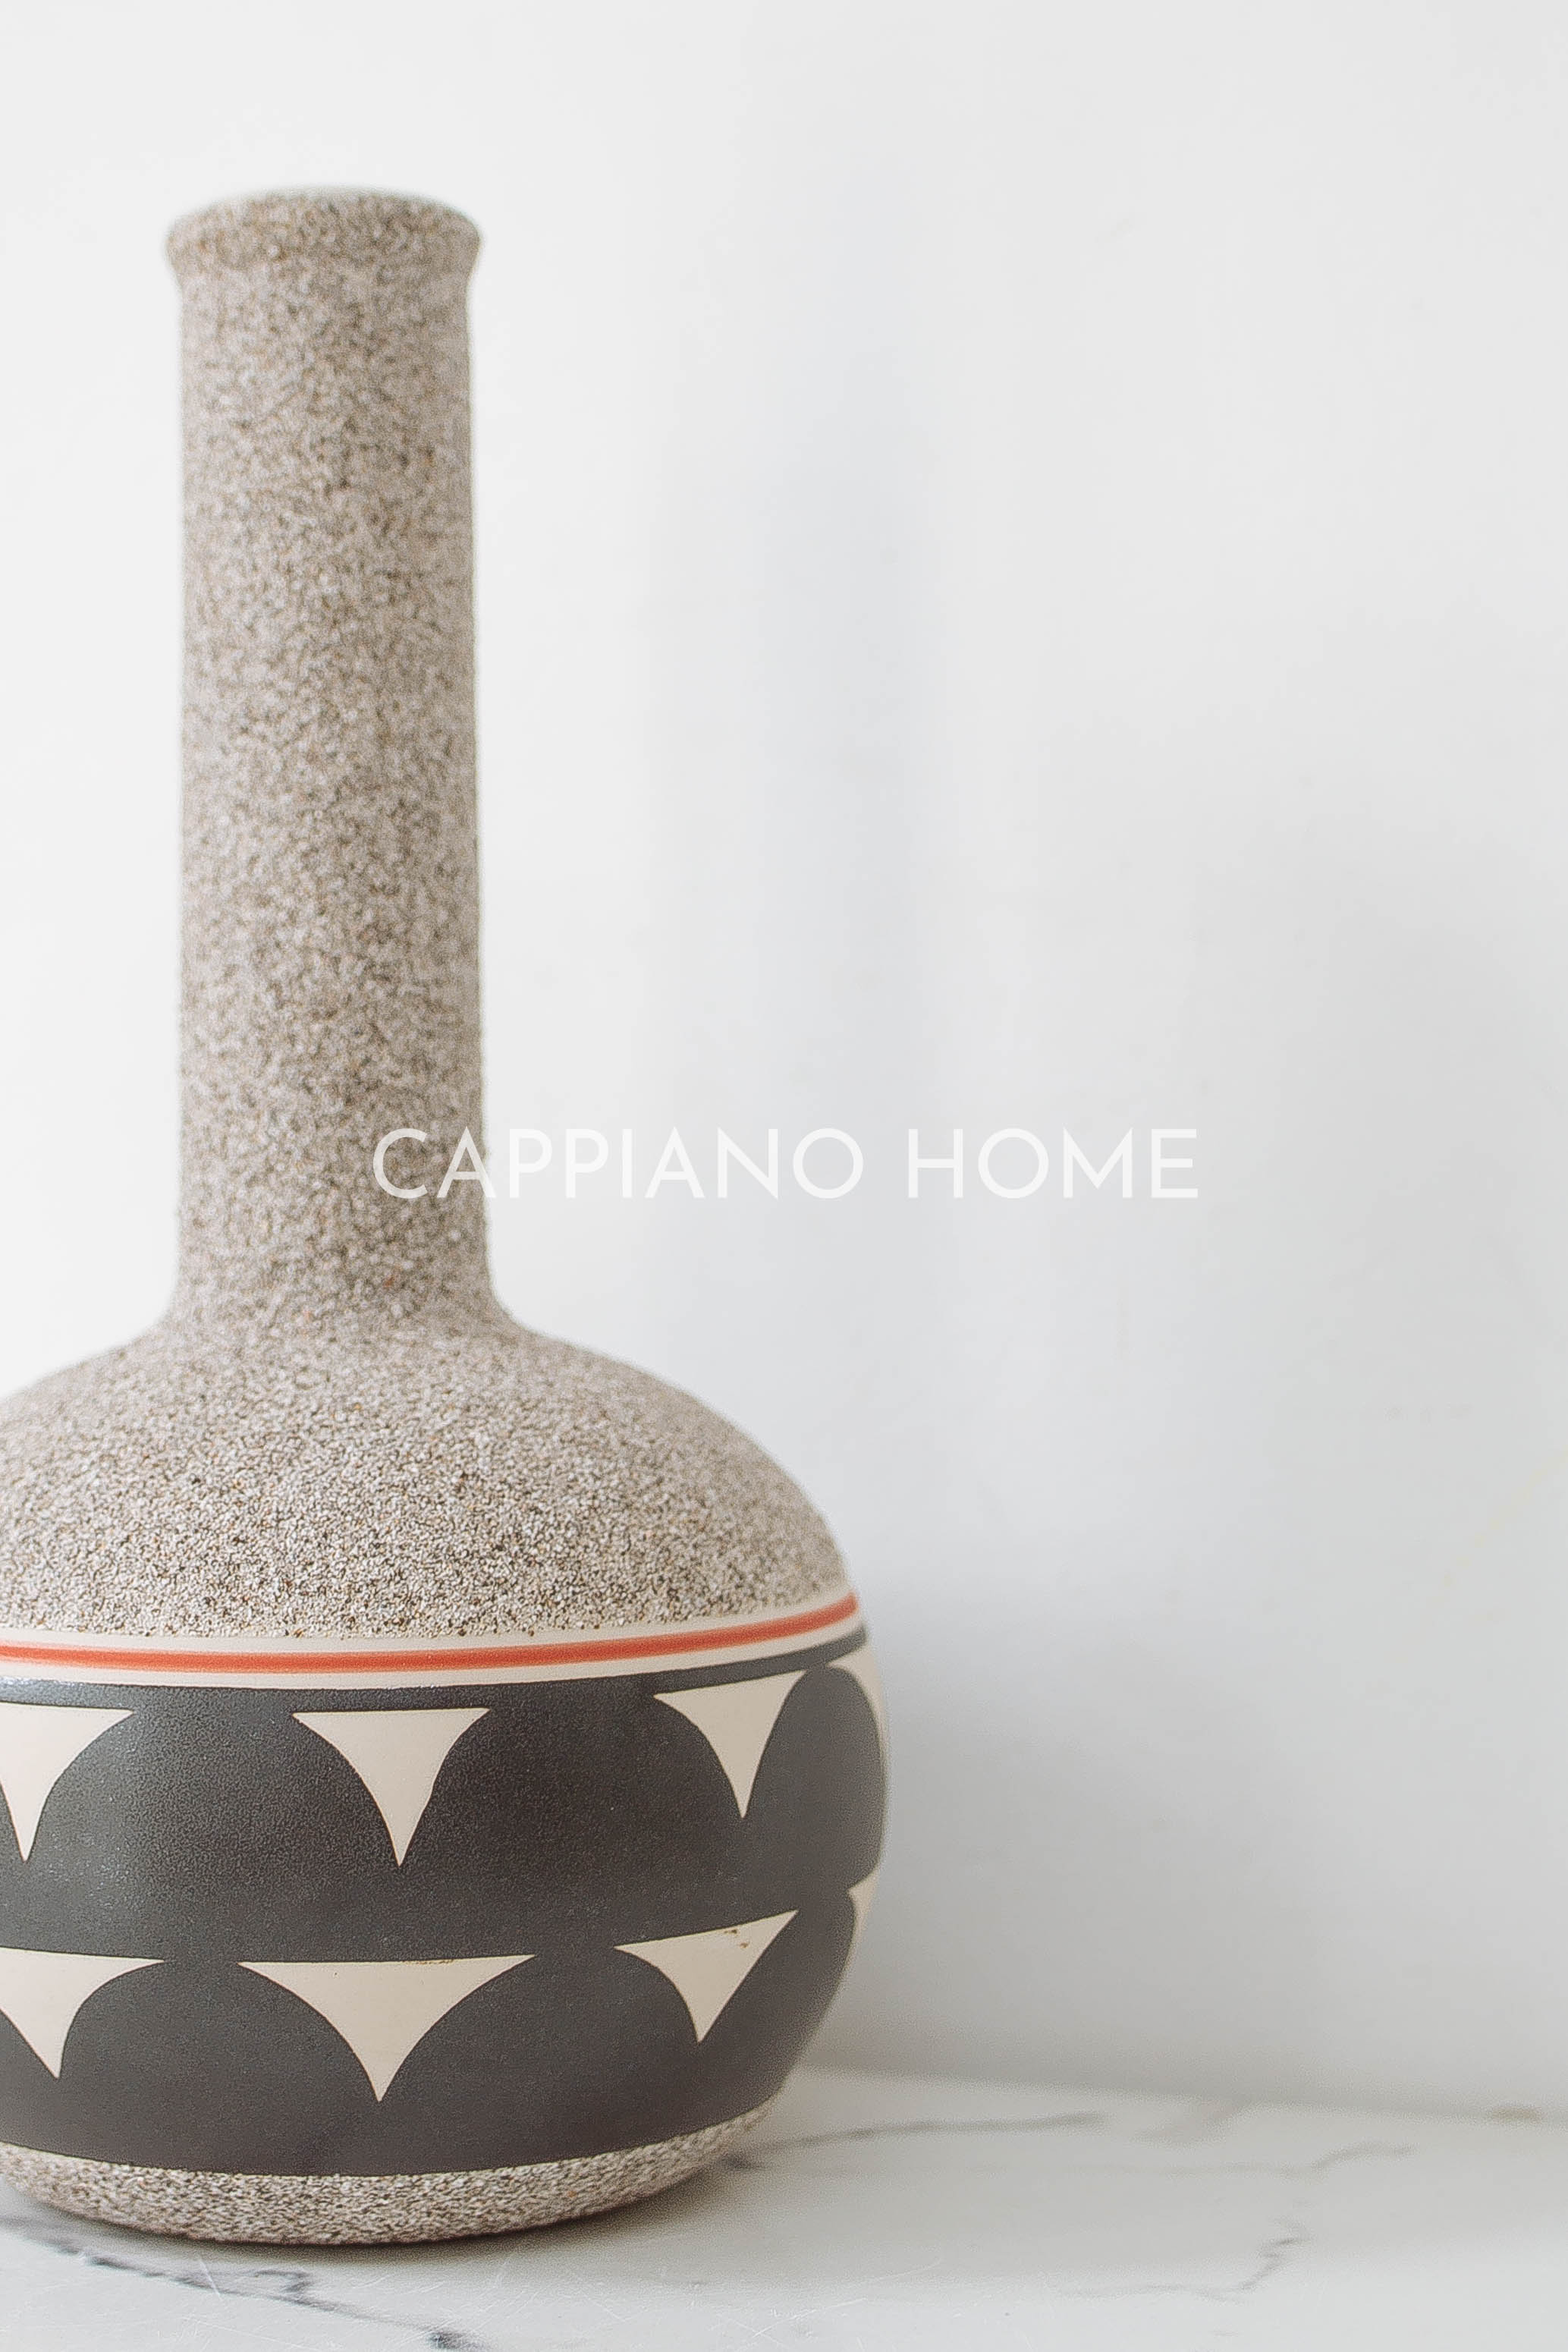 Bình men cát, bình sứ họa tiết độc đáo đựng hoa trang trí decor nhà | Cappiano home